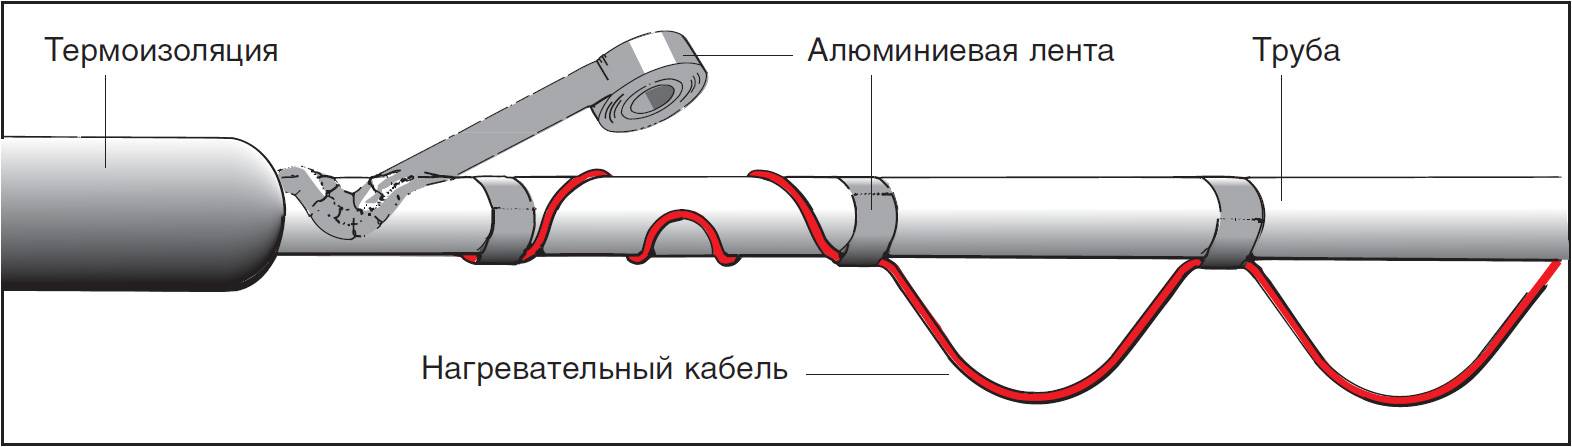 Саморегулирующийся нагревательный кабель: виды, принцип работы, правила выбора